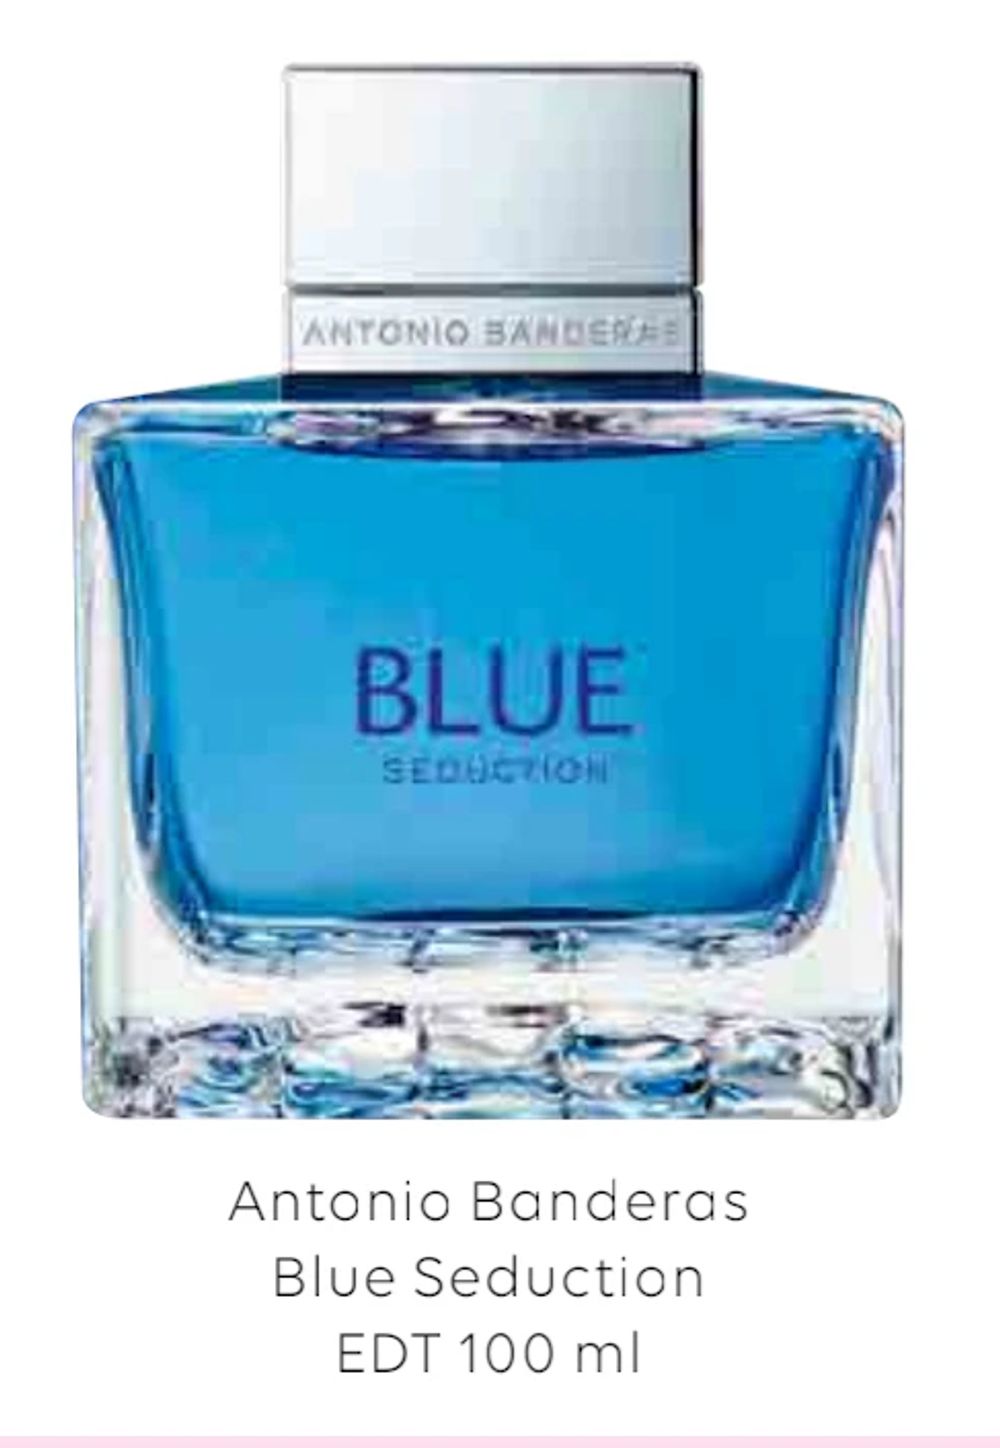 Tilbud på Antonio Banderas Blue Seduction EDT 100 ml fra Scandlines Travel Shop til 159 kr.